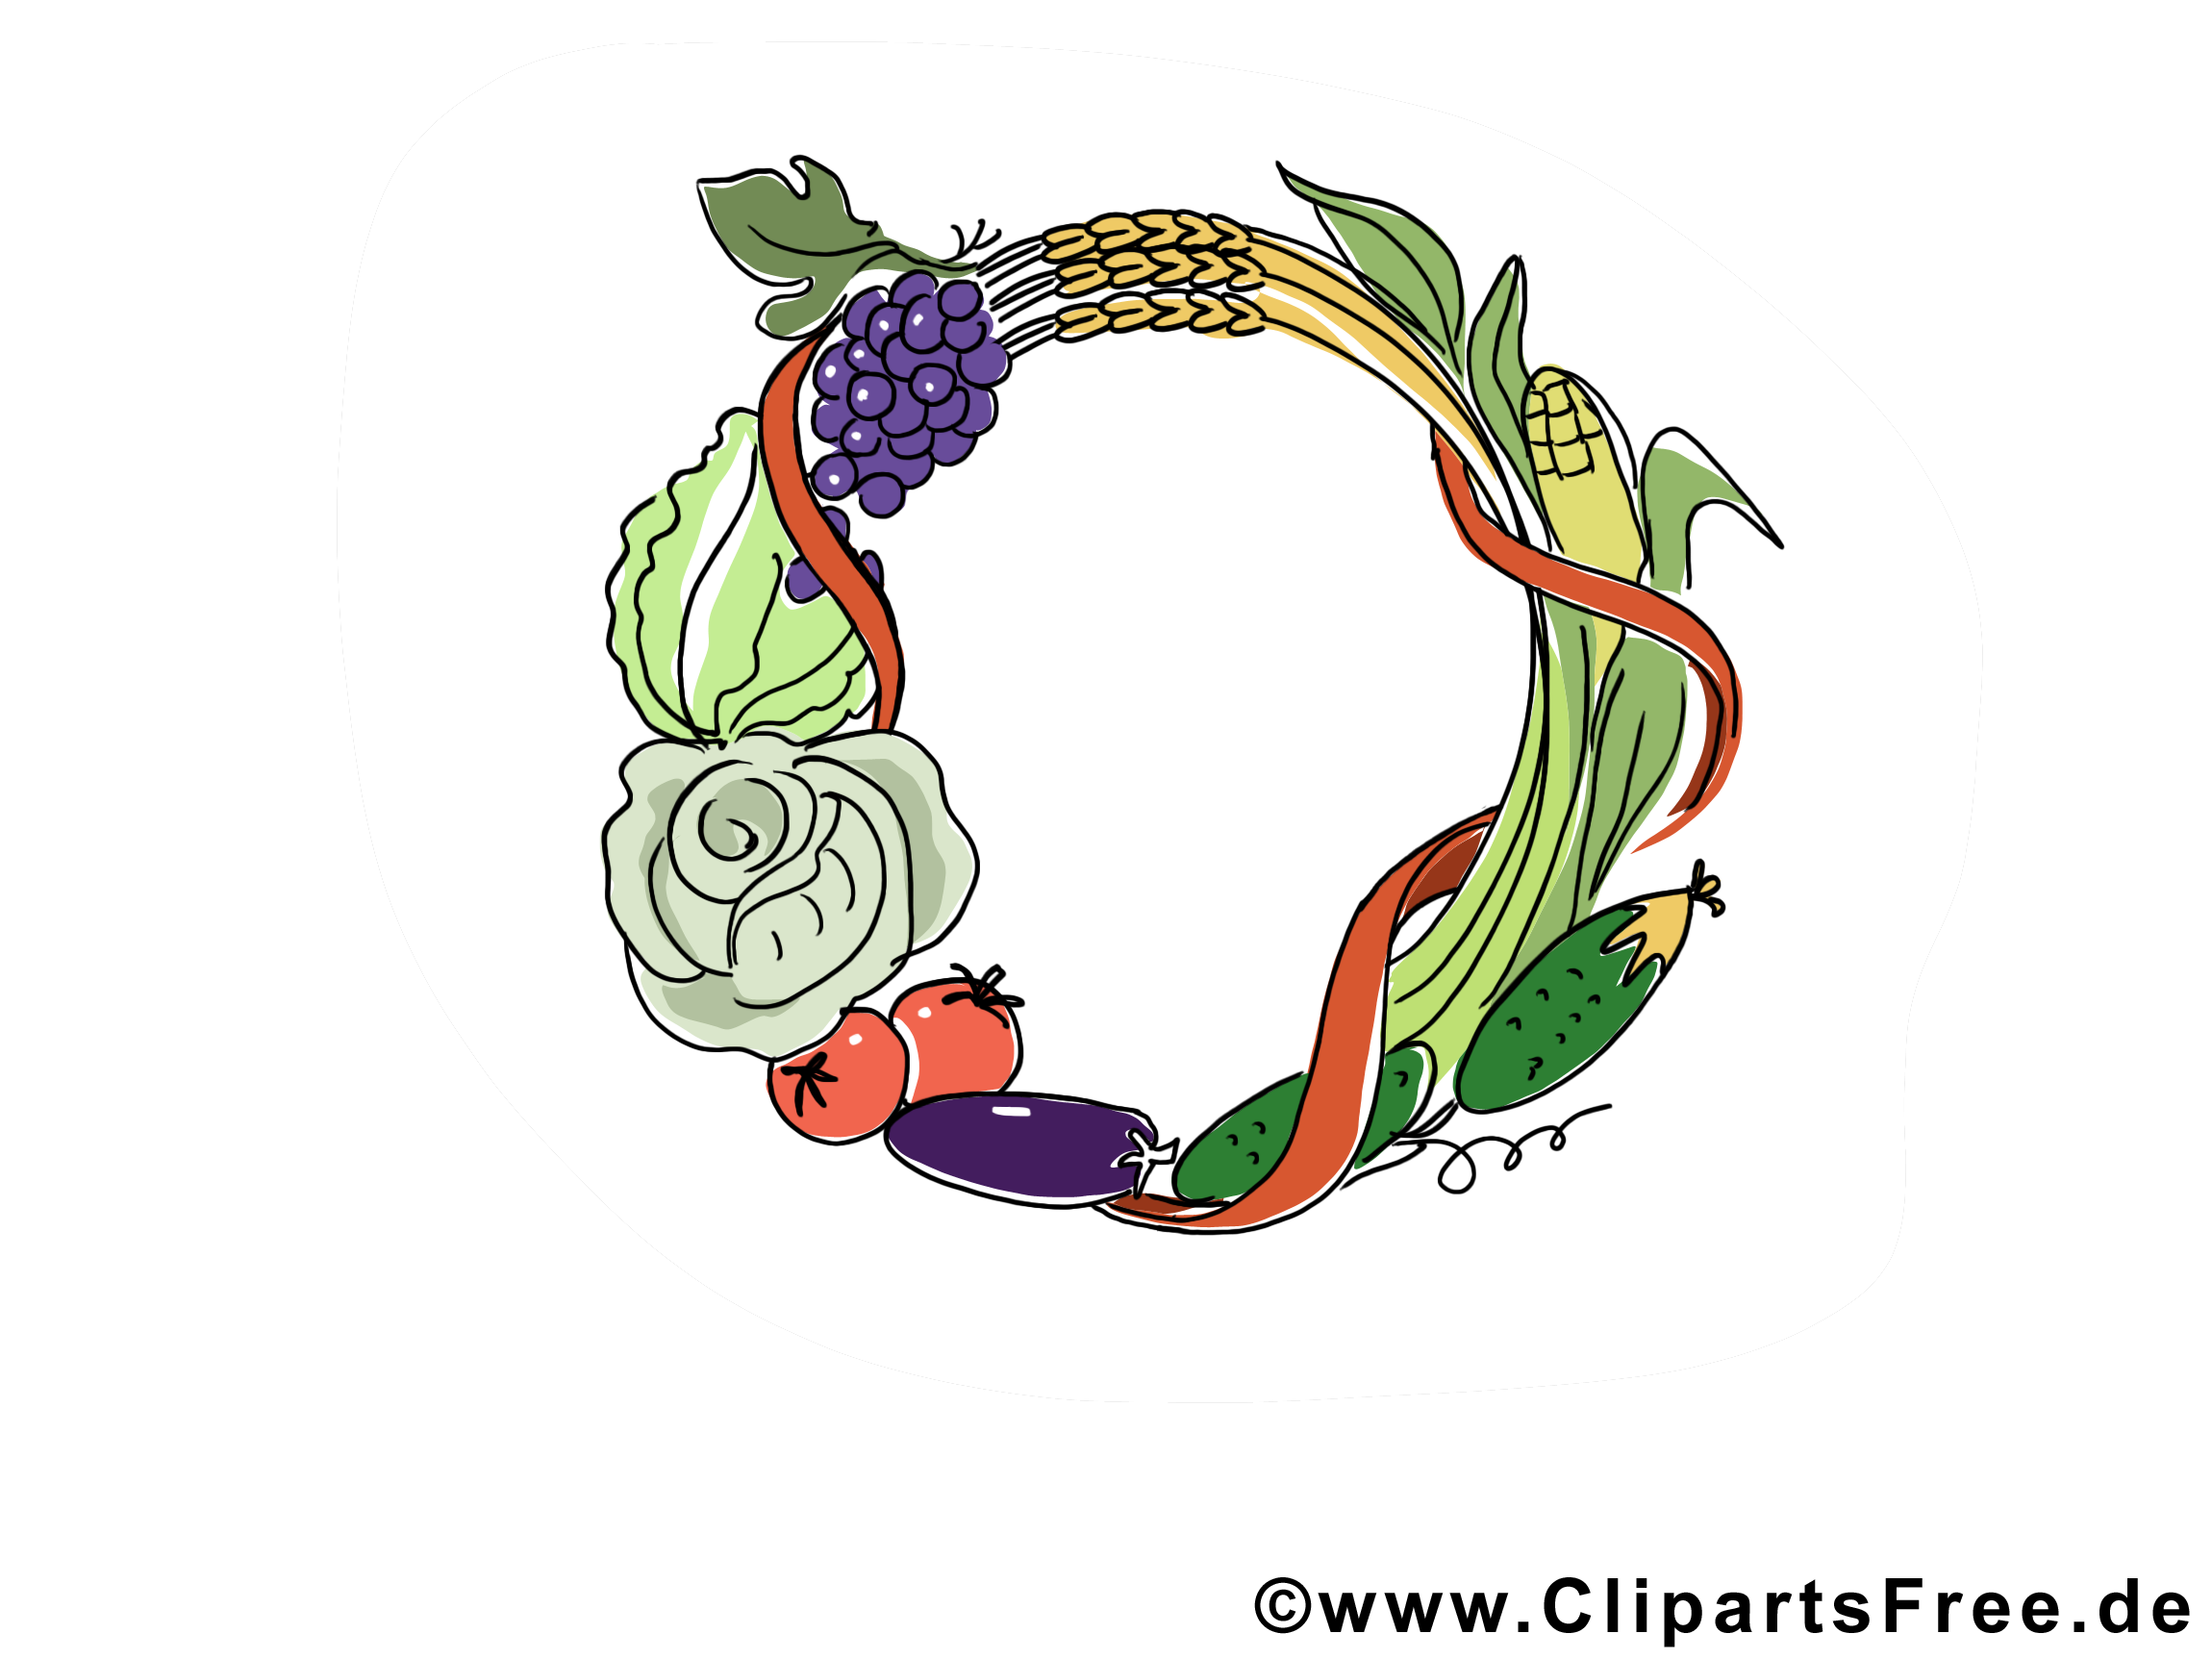 Légumes fruits images gratuites - Automne clipart